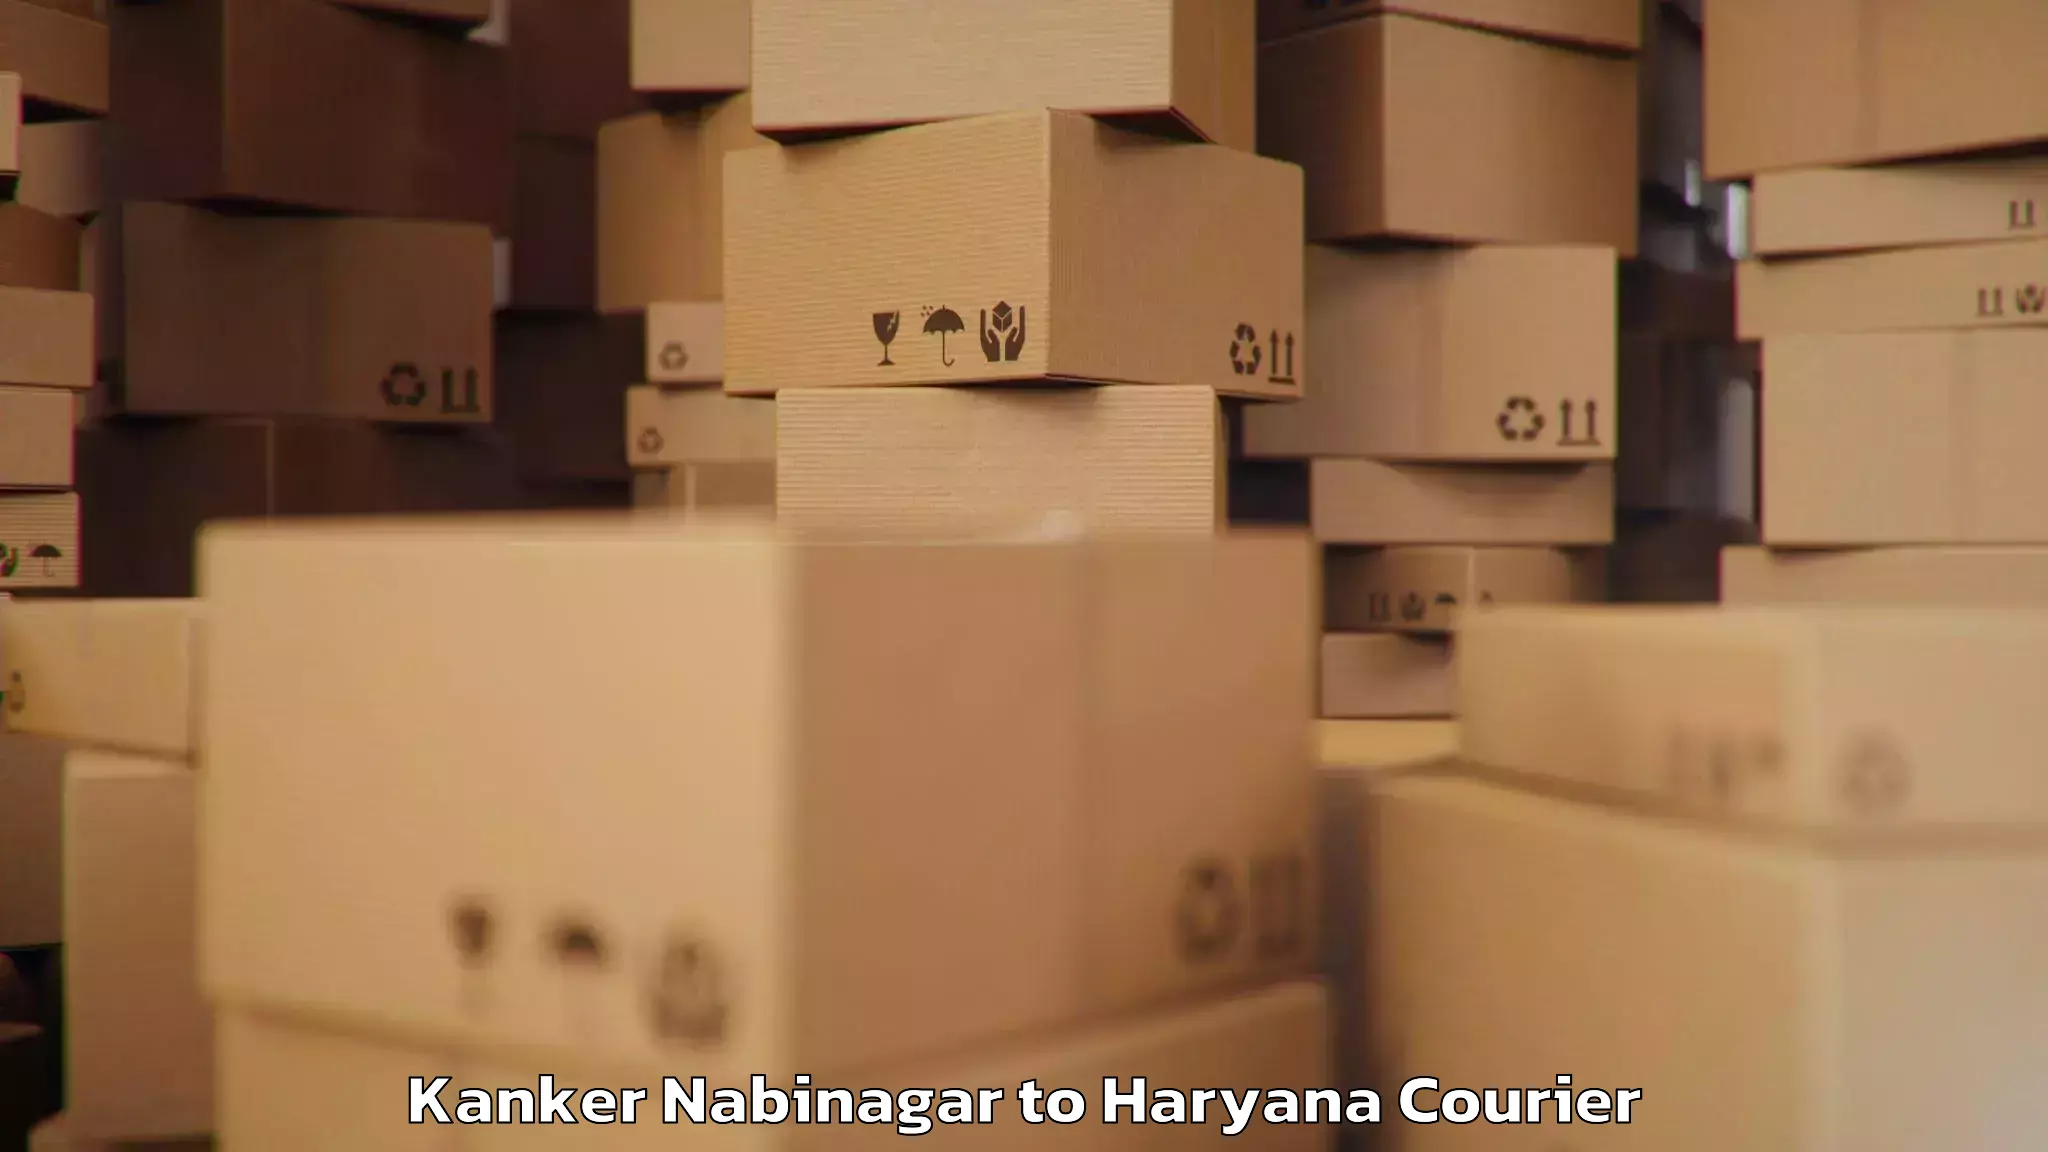 Luggage transport consulting Kanker Nabinagar to Hansi